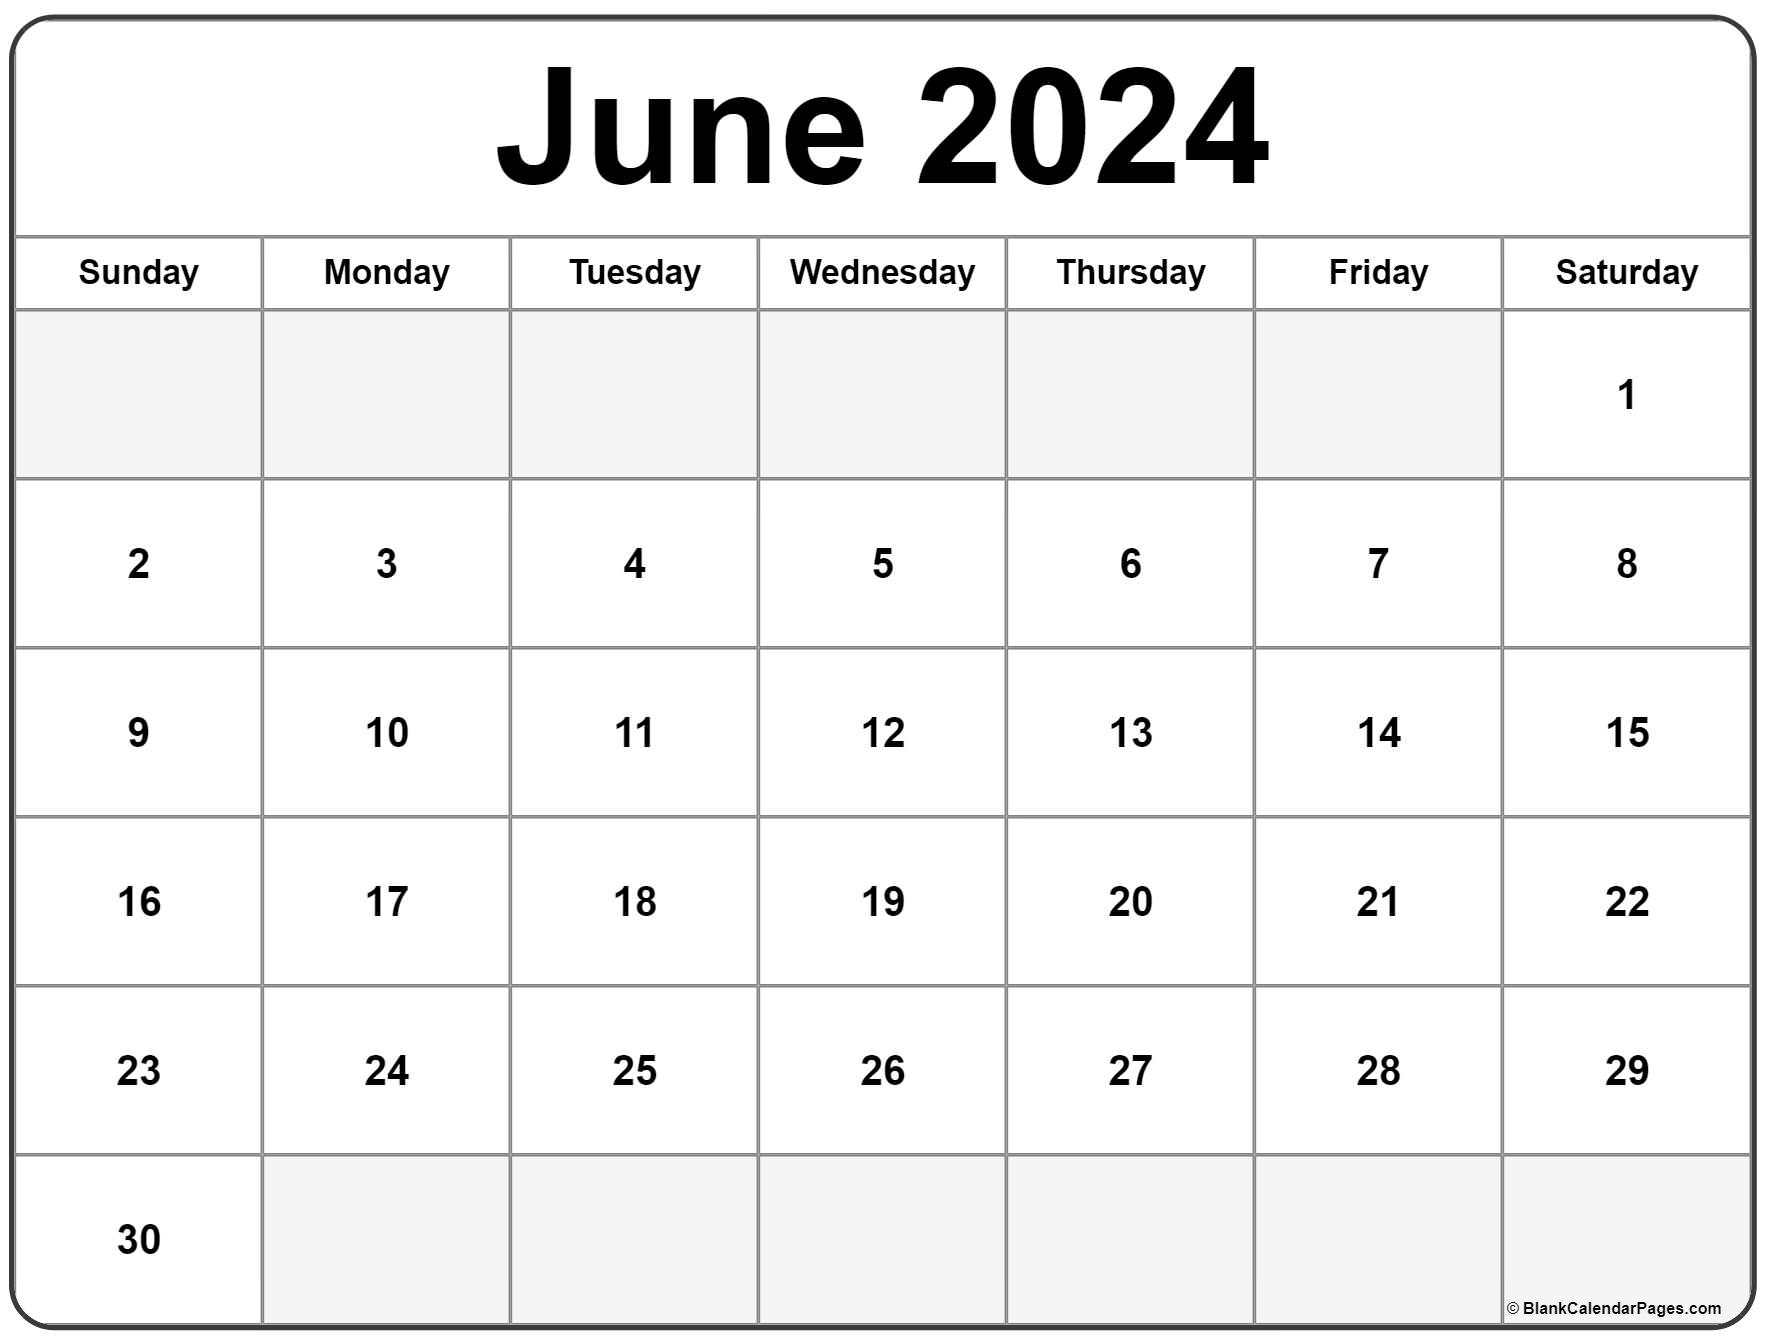 Days Until June 3rd 2024 Ruthe Clarissa